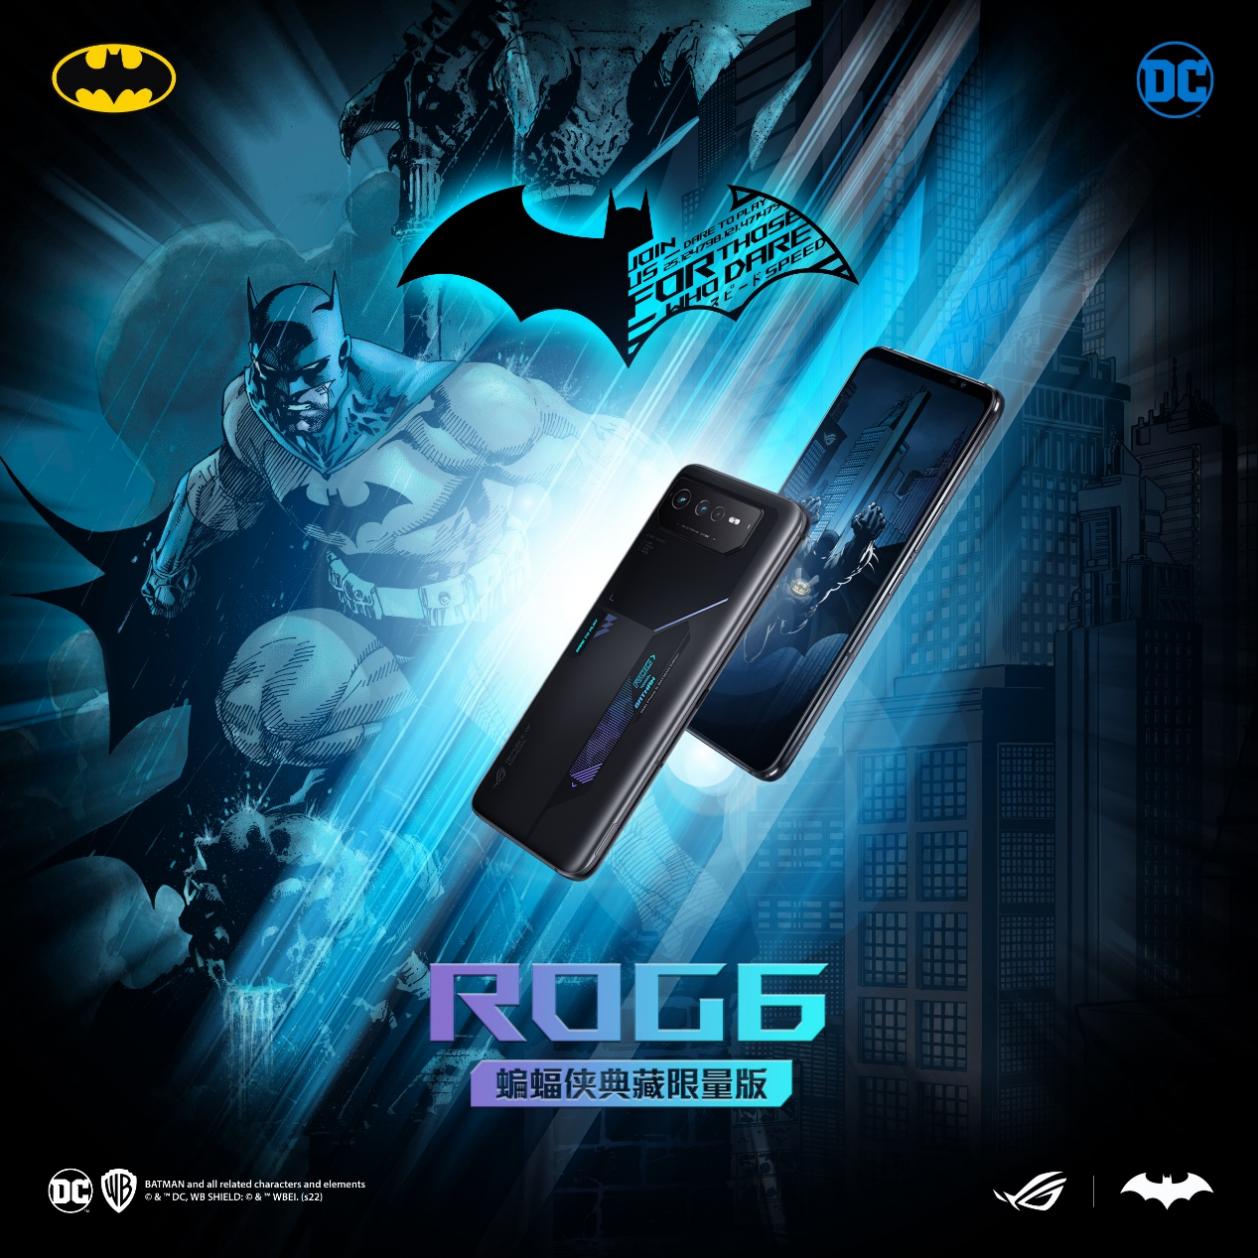 ROG游戏手机 6 蝙蝠侠典藏限量版开工季好价模式 下单立省千元